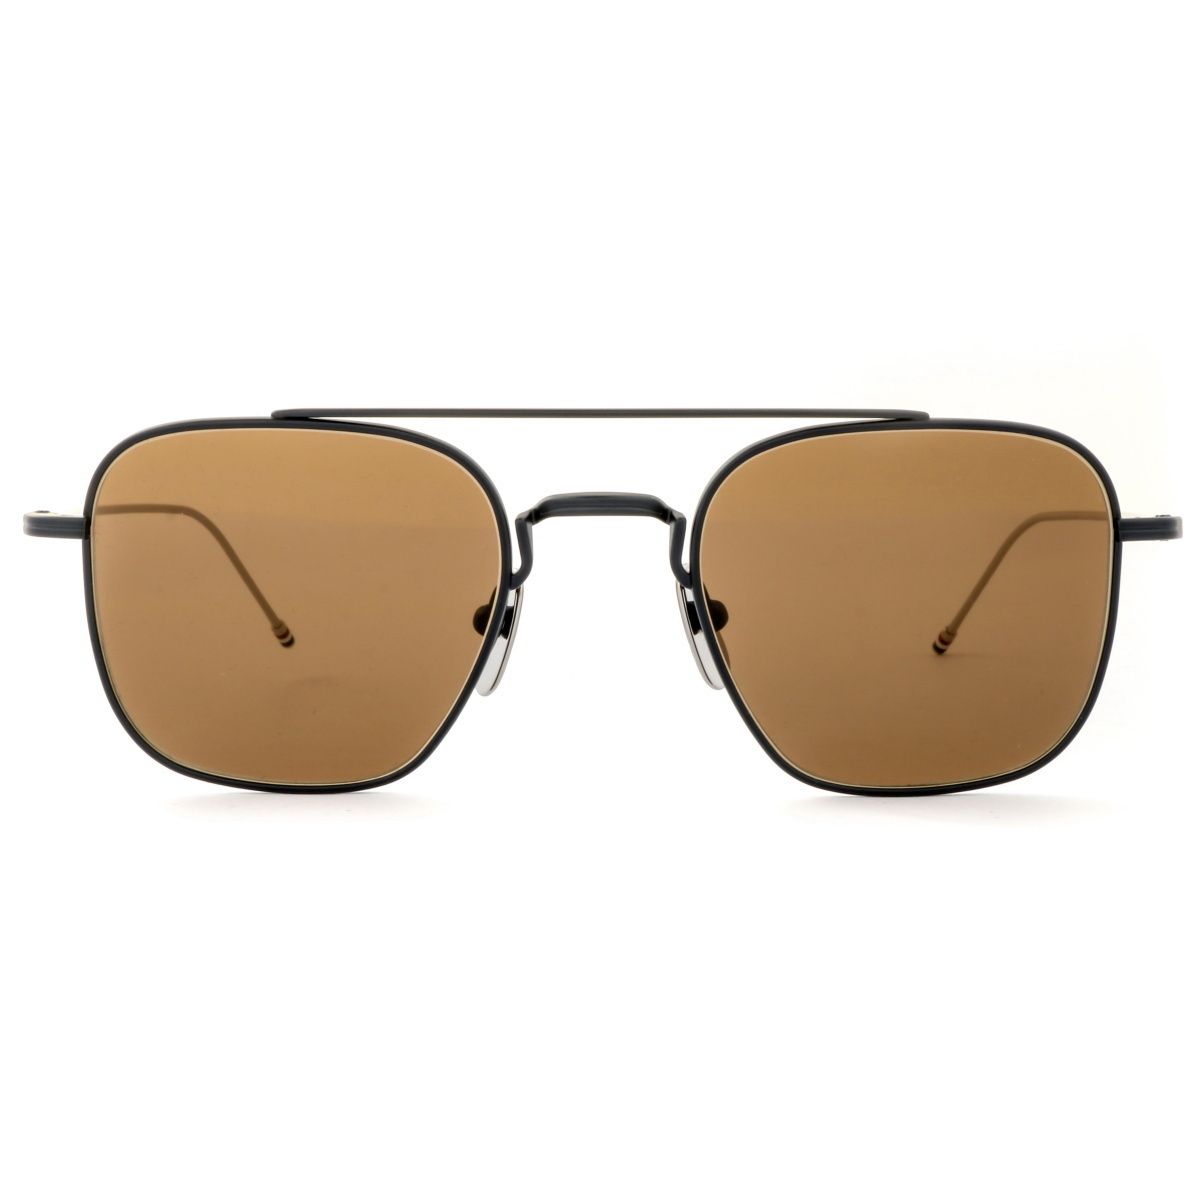 TB907 Square Sunglasses 3 - size 50